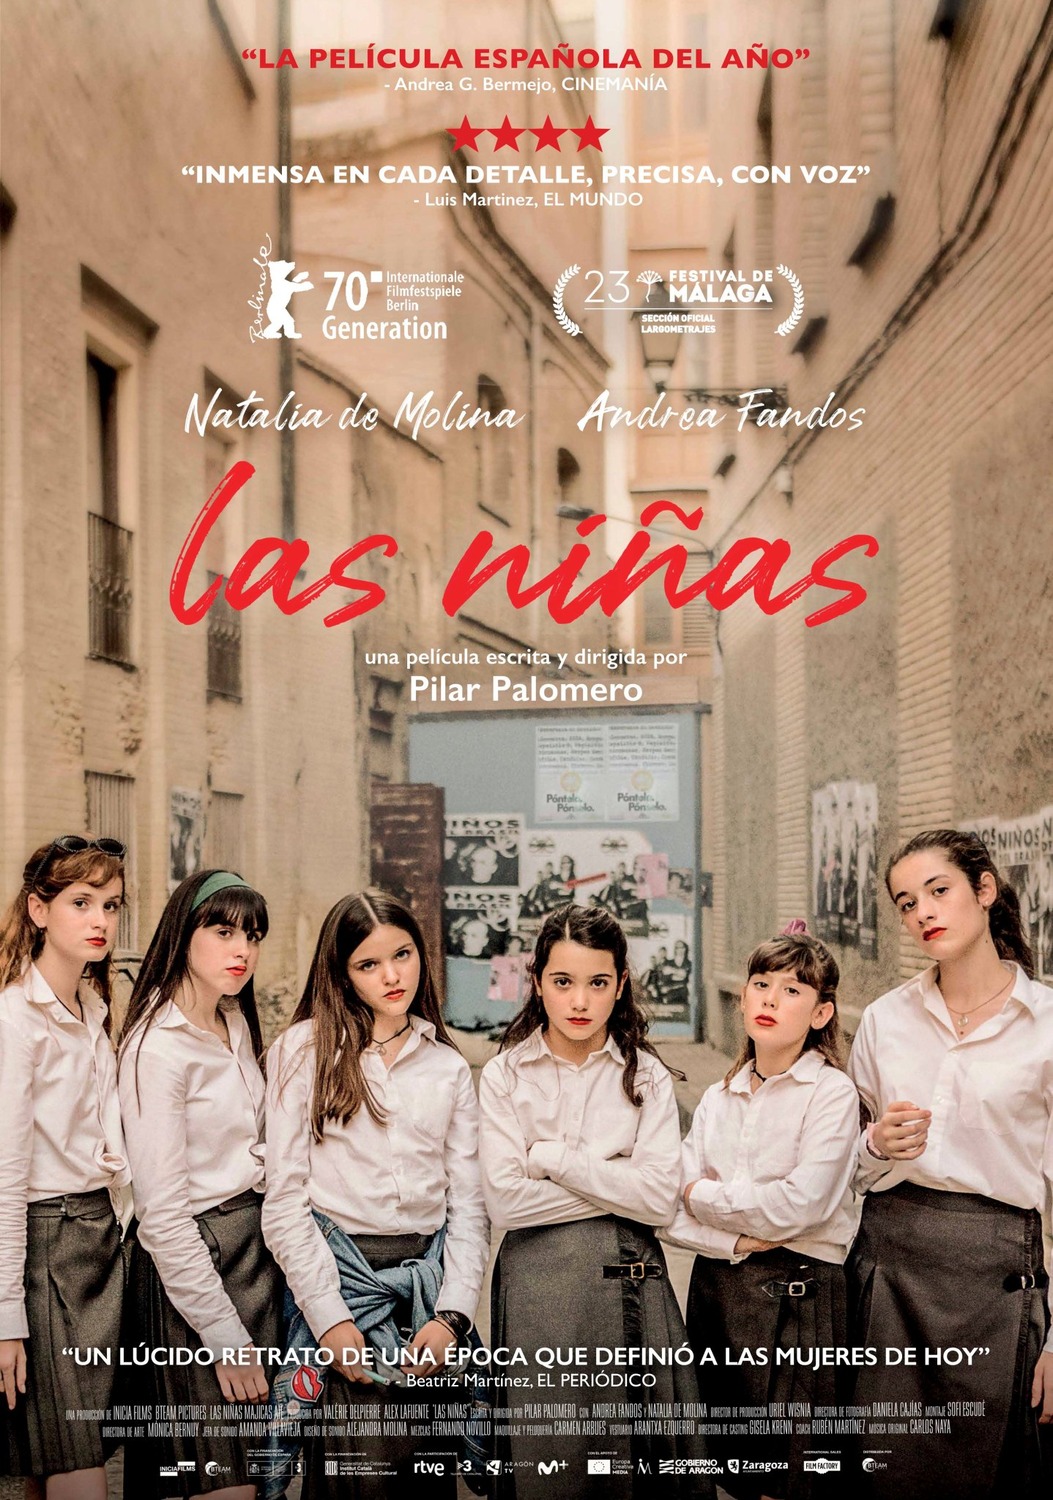 Extra Large Movie Poster Image for Las niñas 